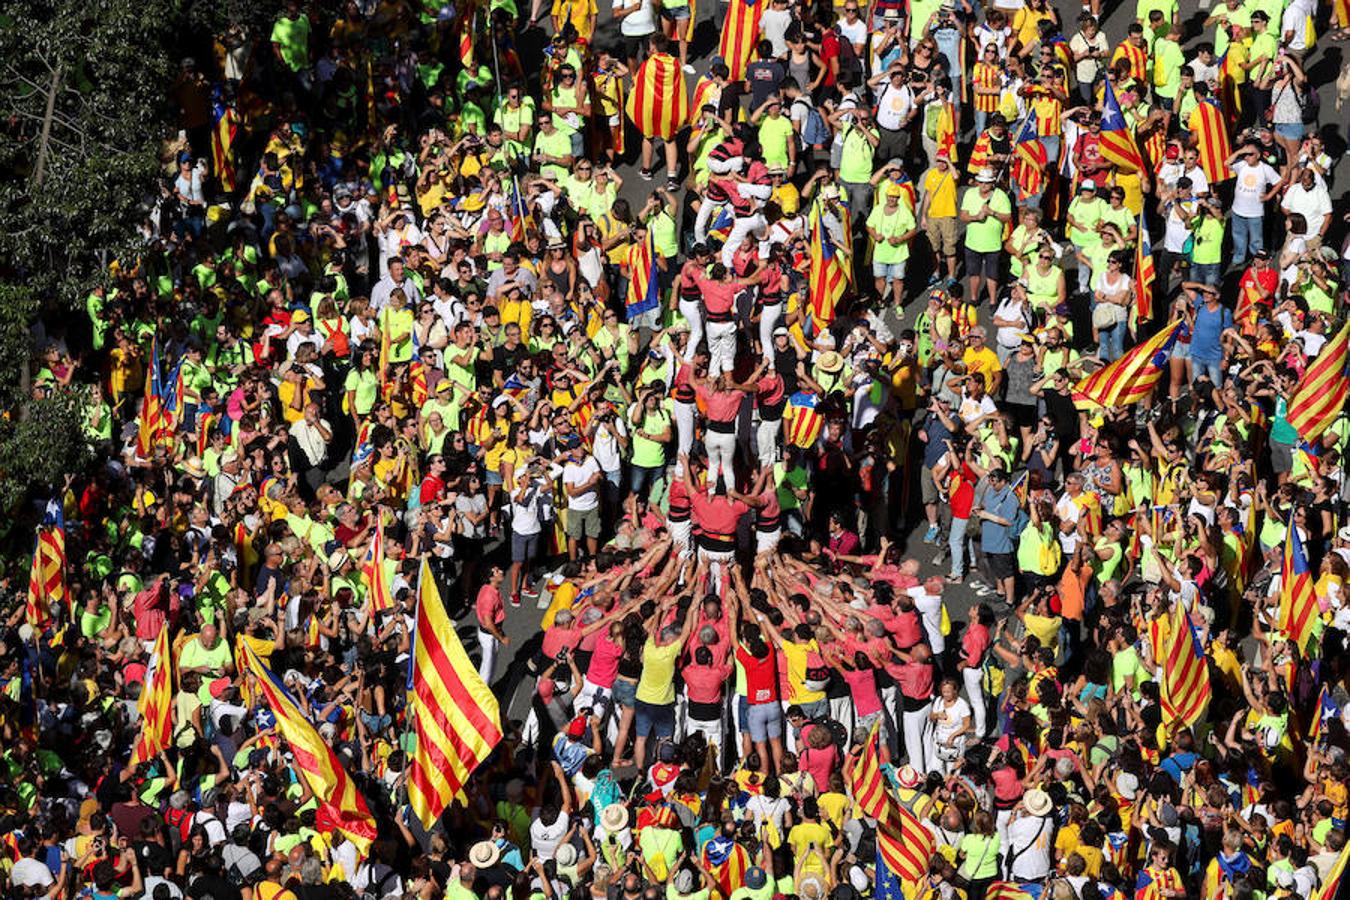 Miles de personas con esteladas han llenado las calles de Barcelona durante la marcha independentista con motivo de la Diada